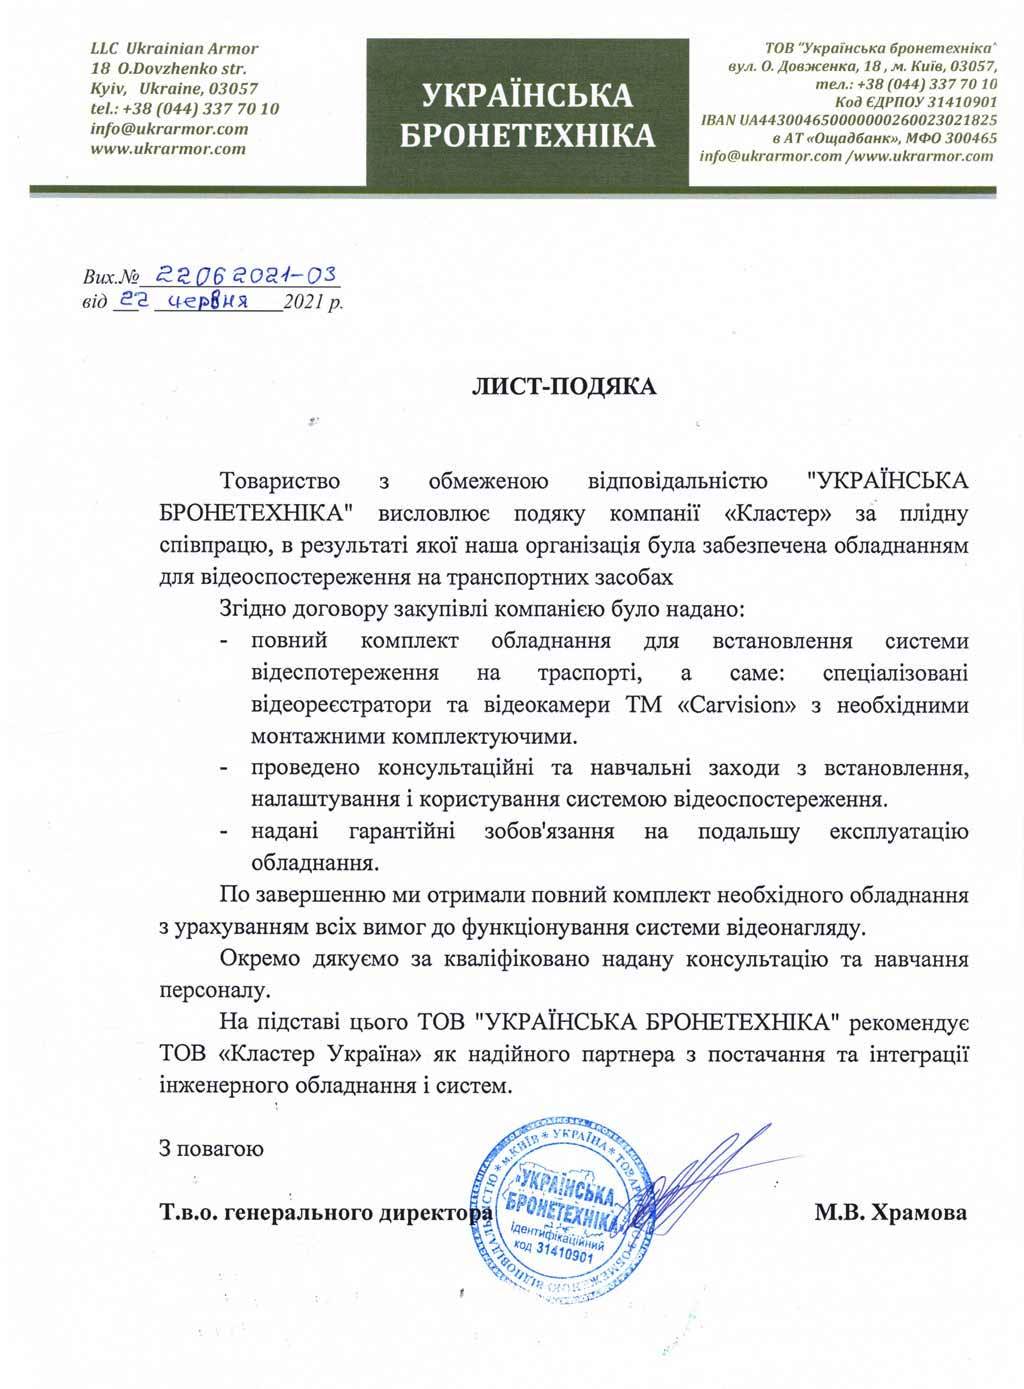 Рекомендаційний лист від ТОВ «Українська Бронетехніка»